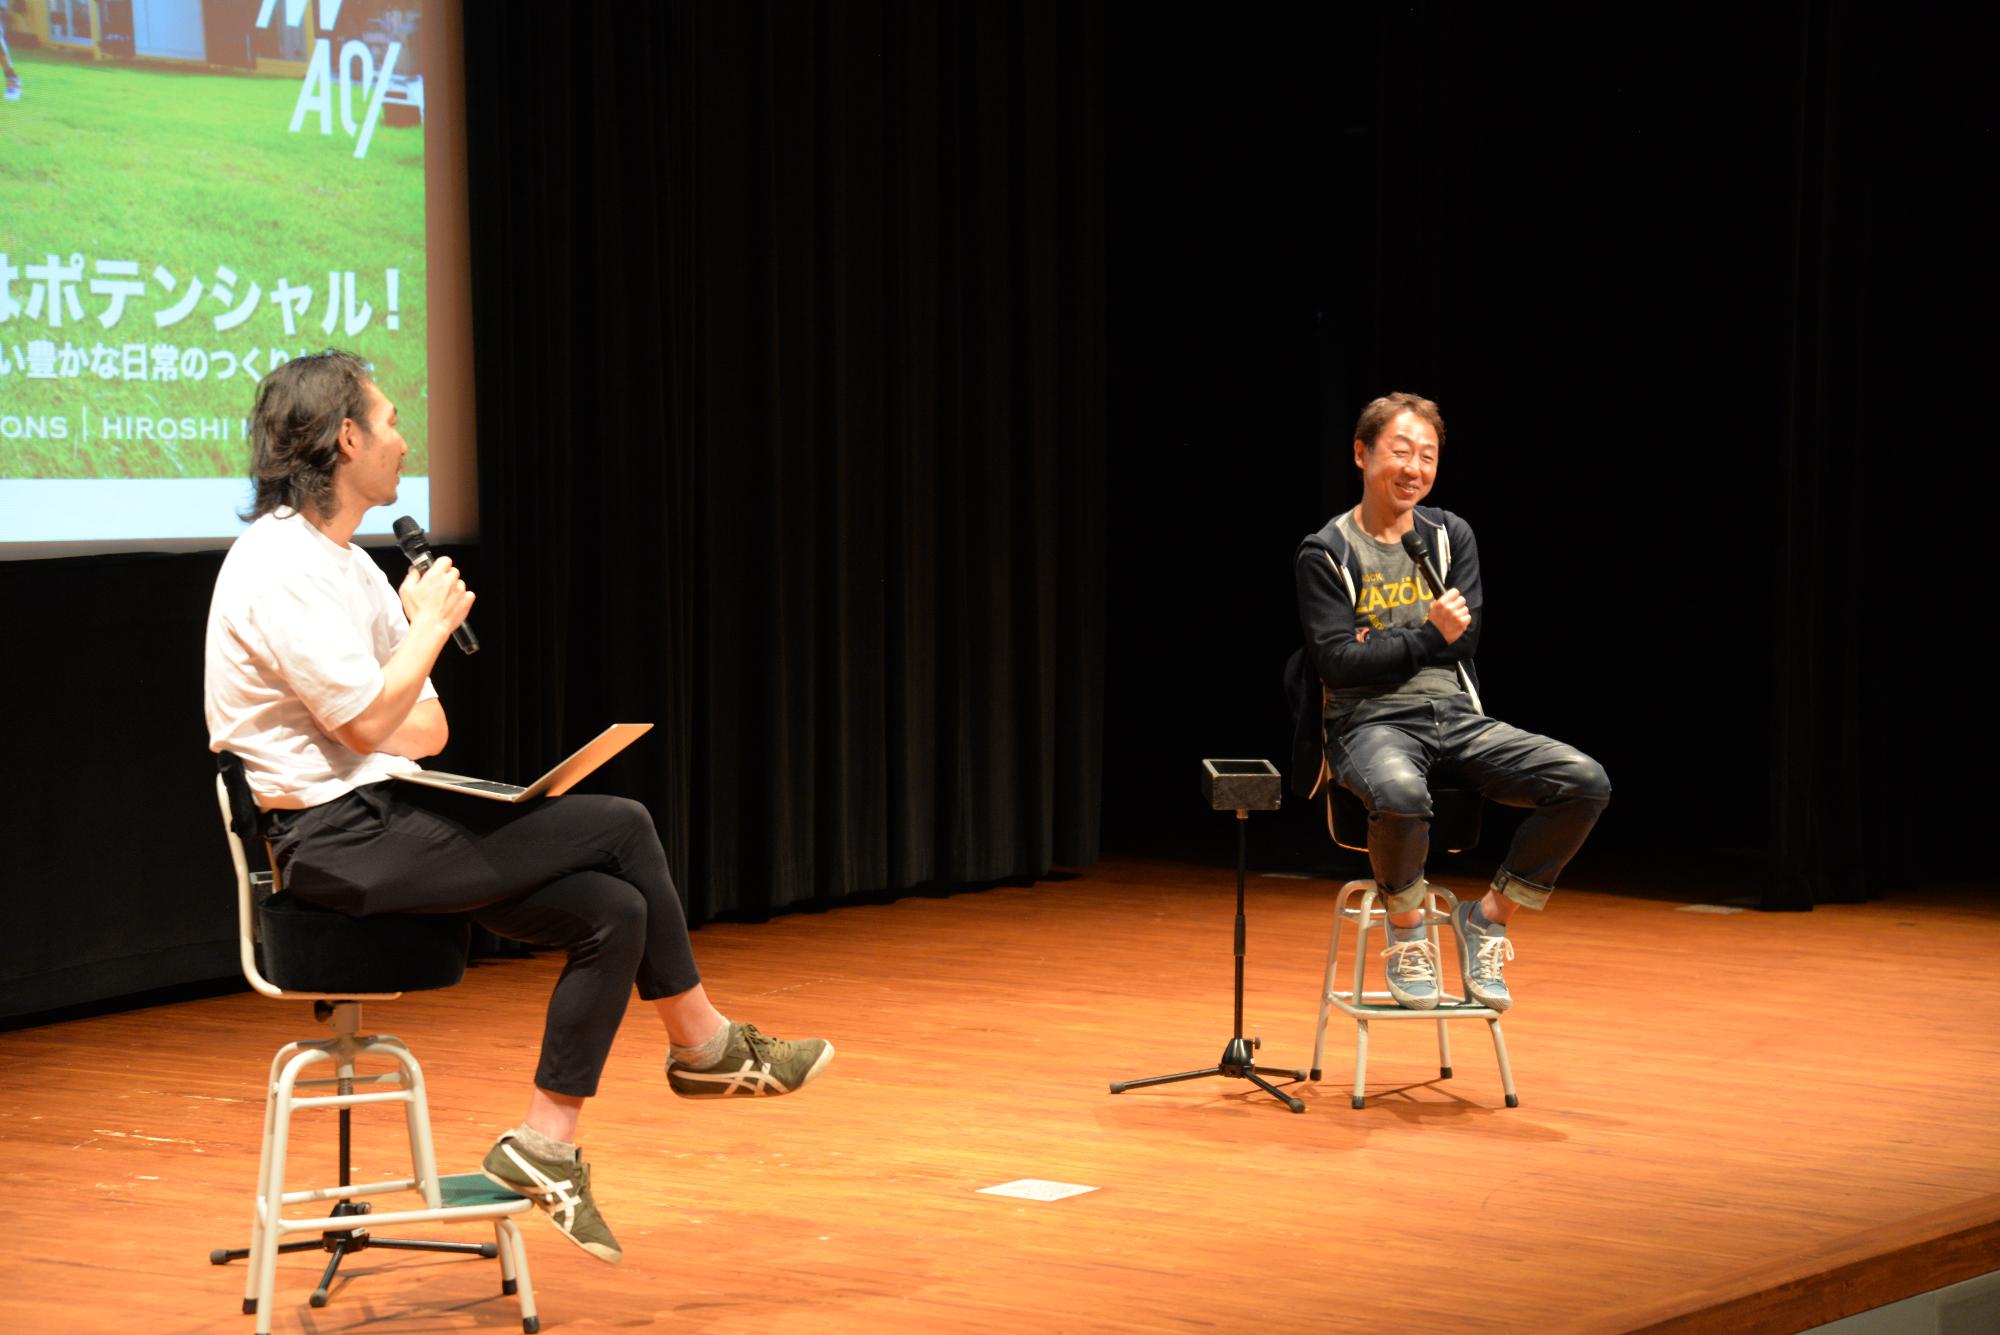 ステージ上で西村浩氏と加藤寛之氏が観客席に向かって椅子に座りながら参加者の質問に答えている。